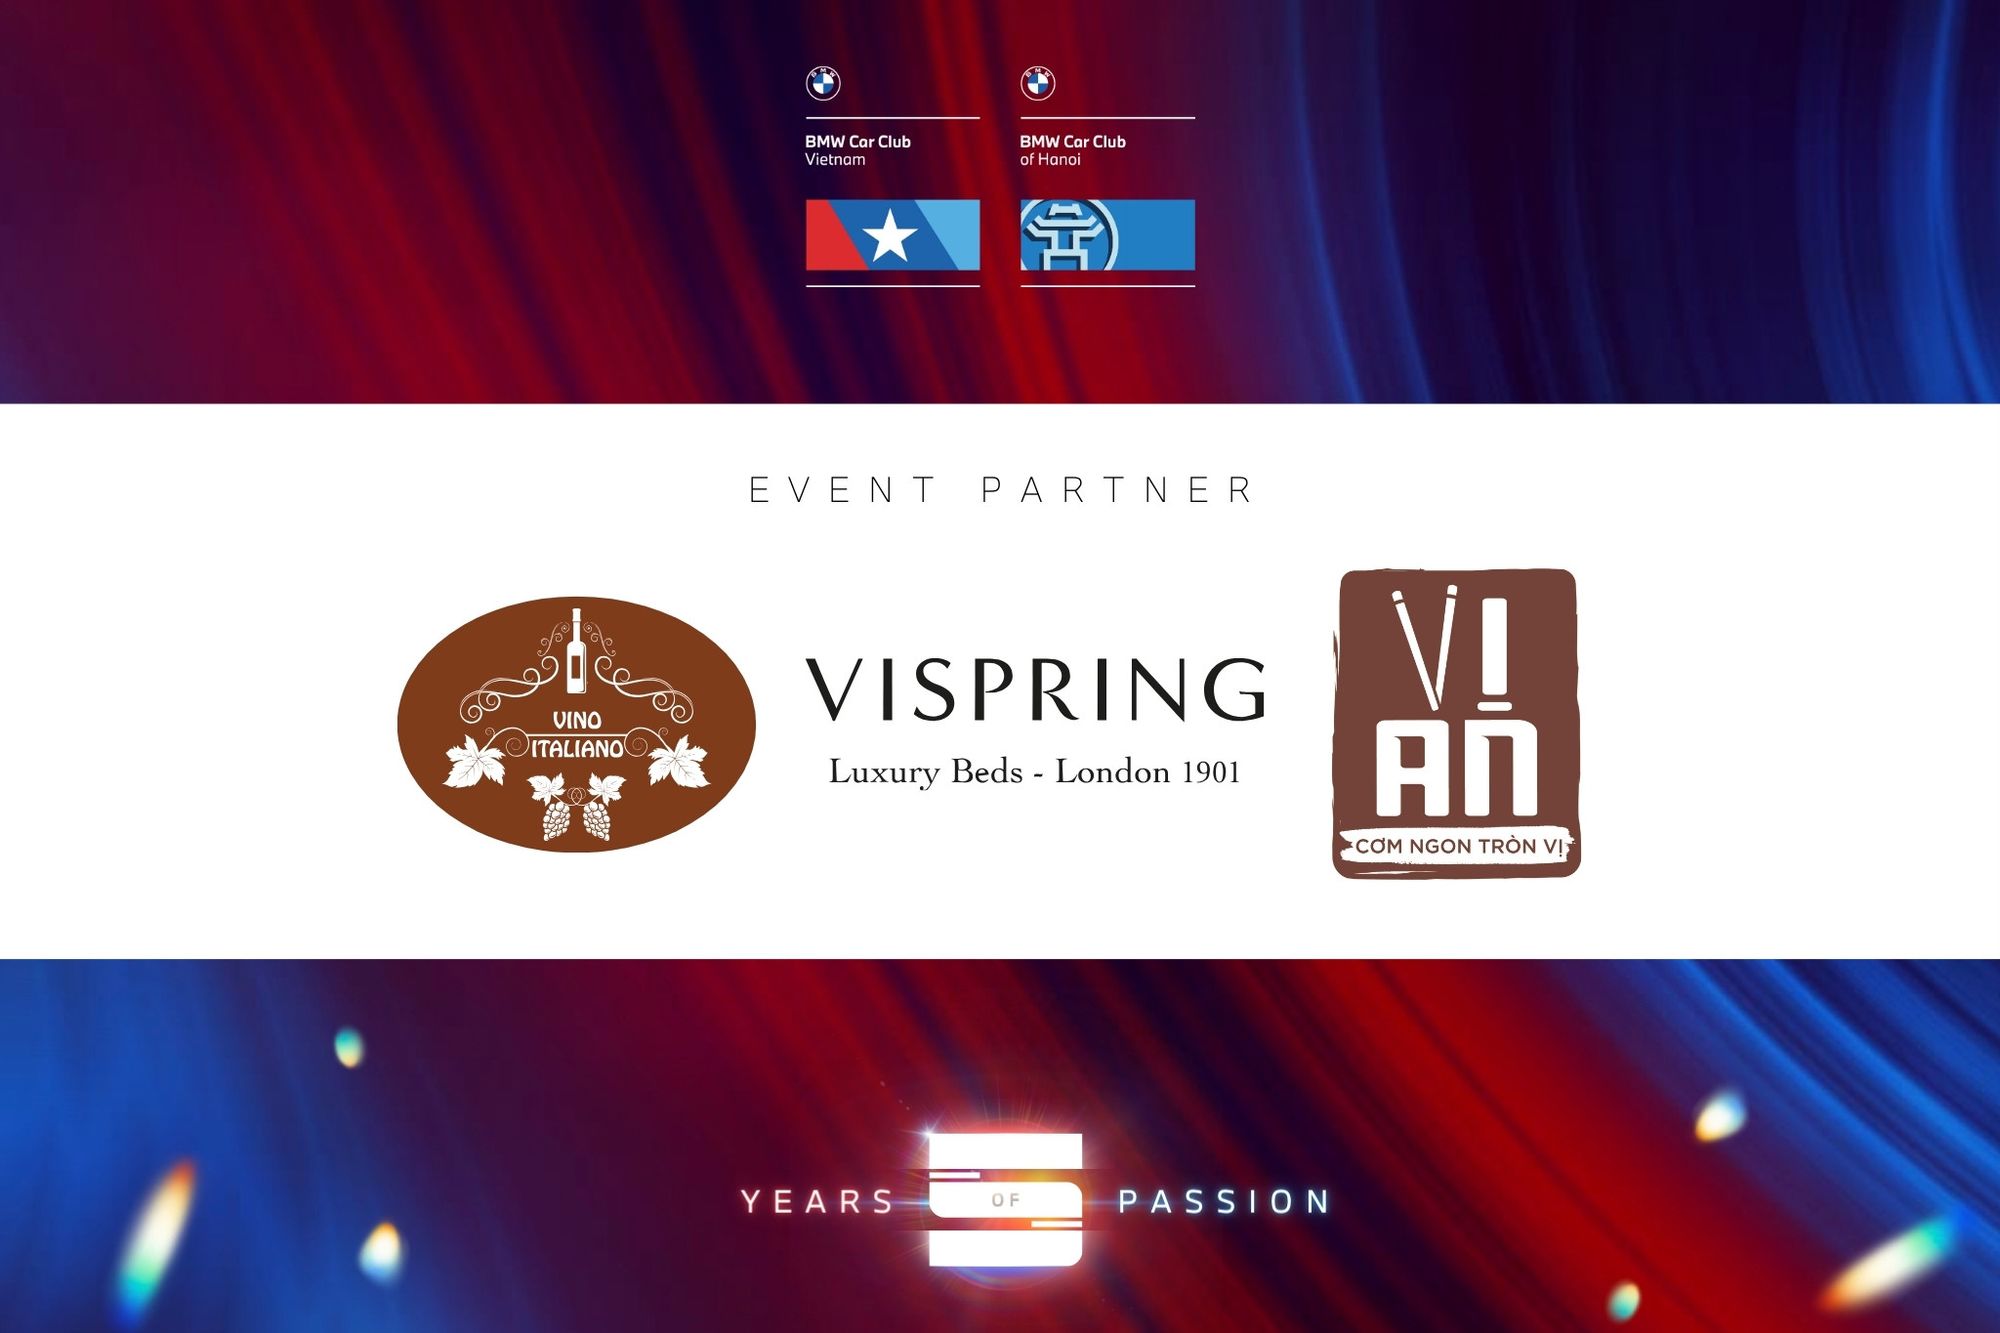 Kỷ niệm 5 năm BMW Club of Hanoi: Đối tác đồng hành Vino Italiano; Vispring; Vị An